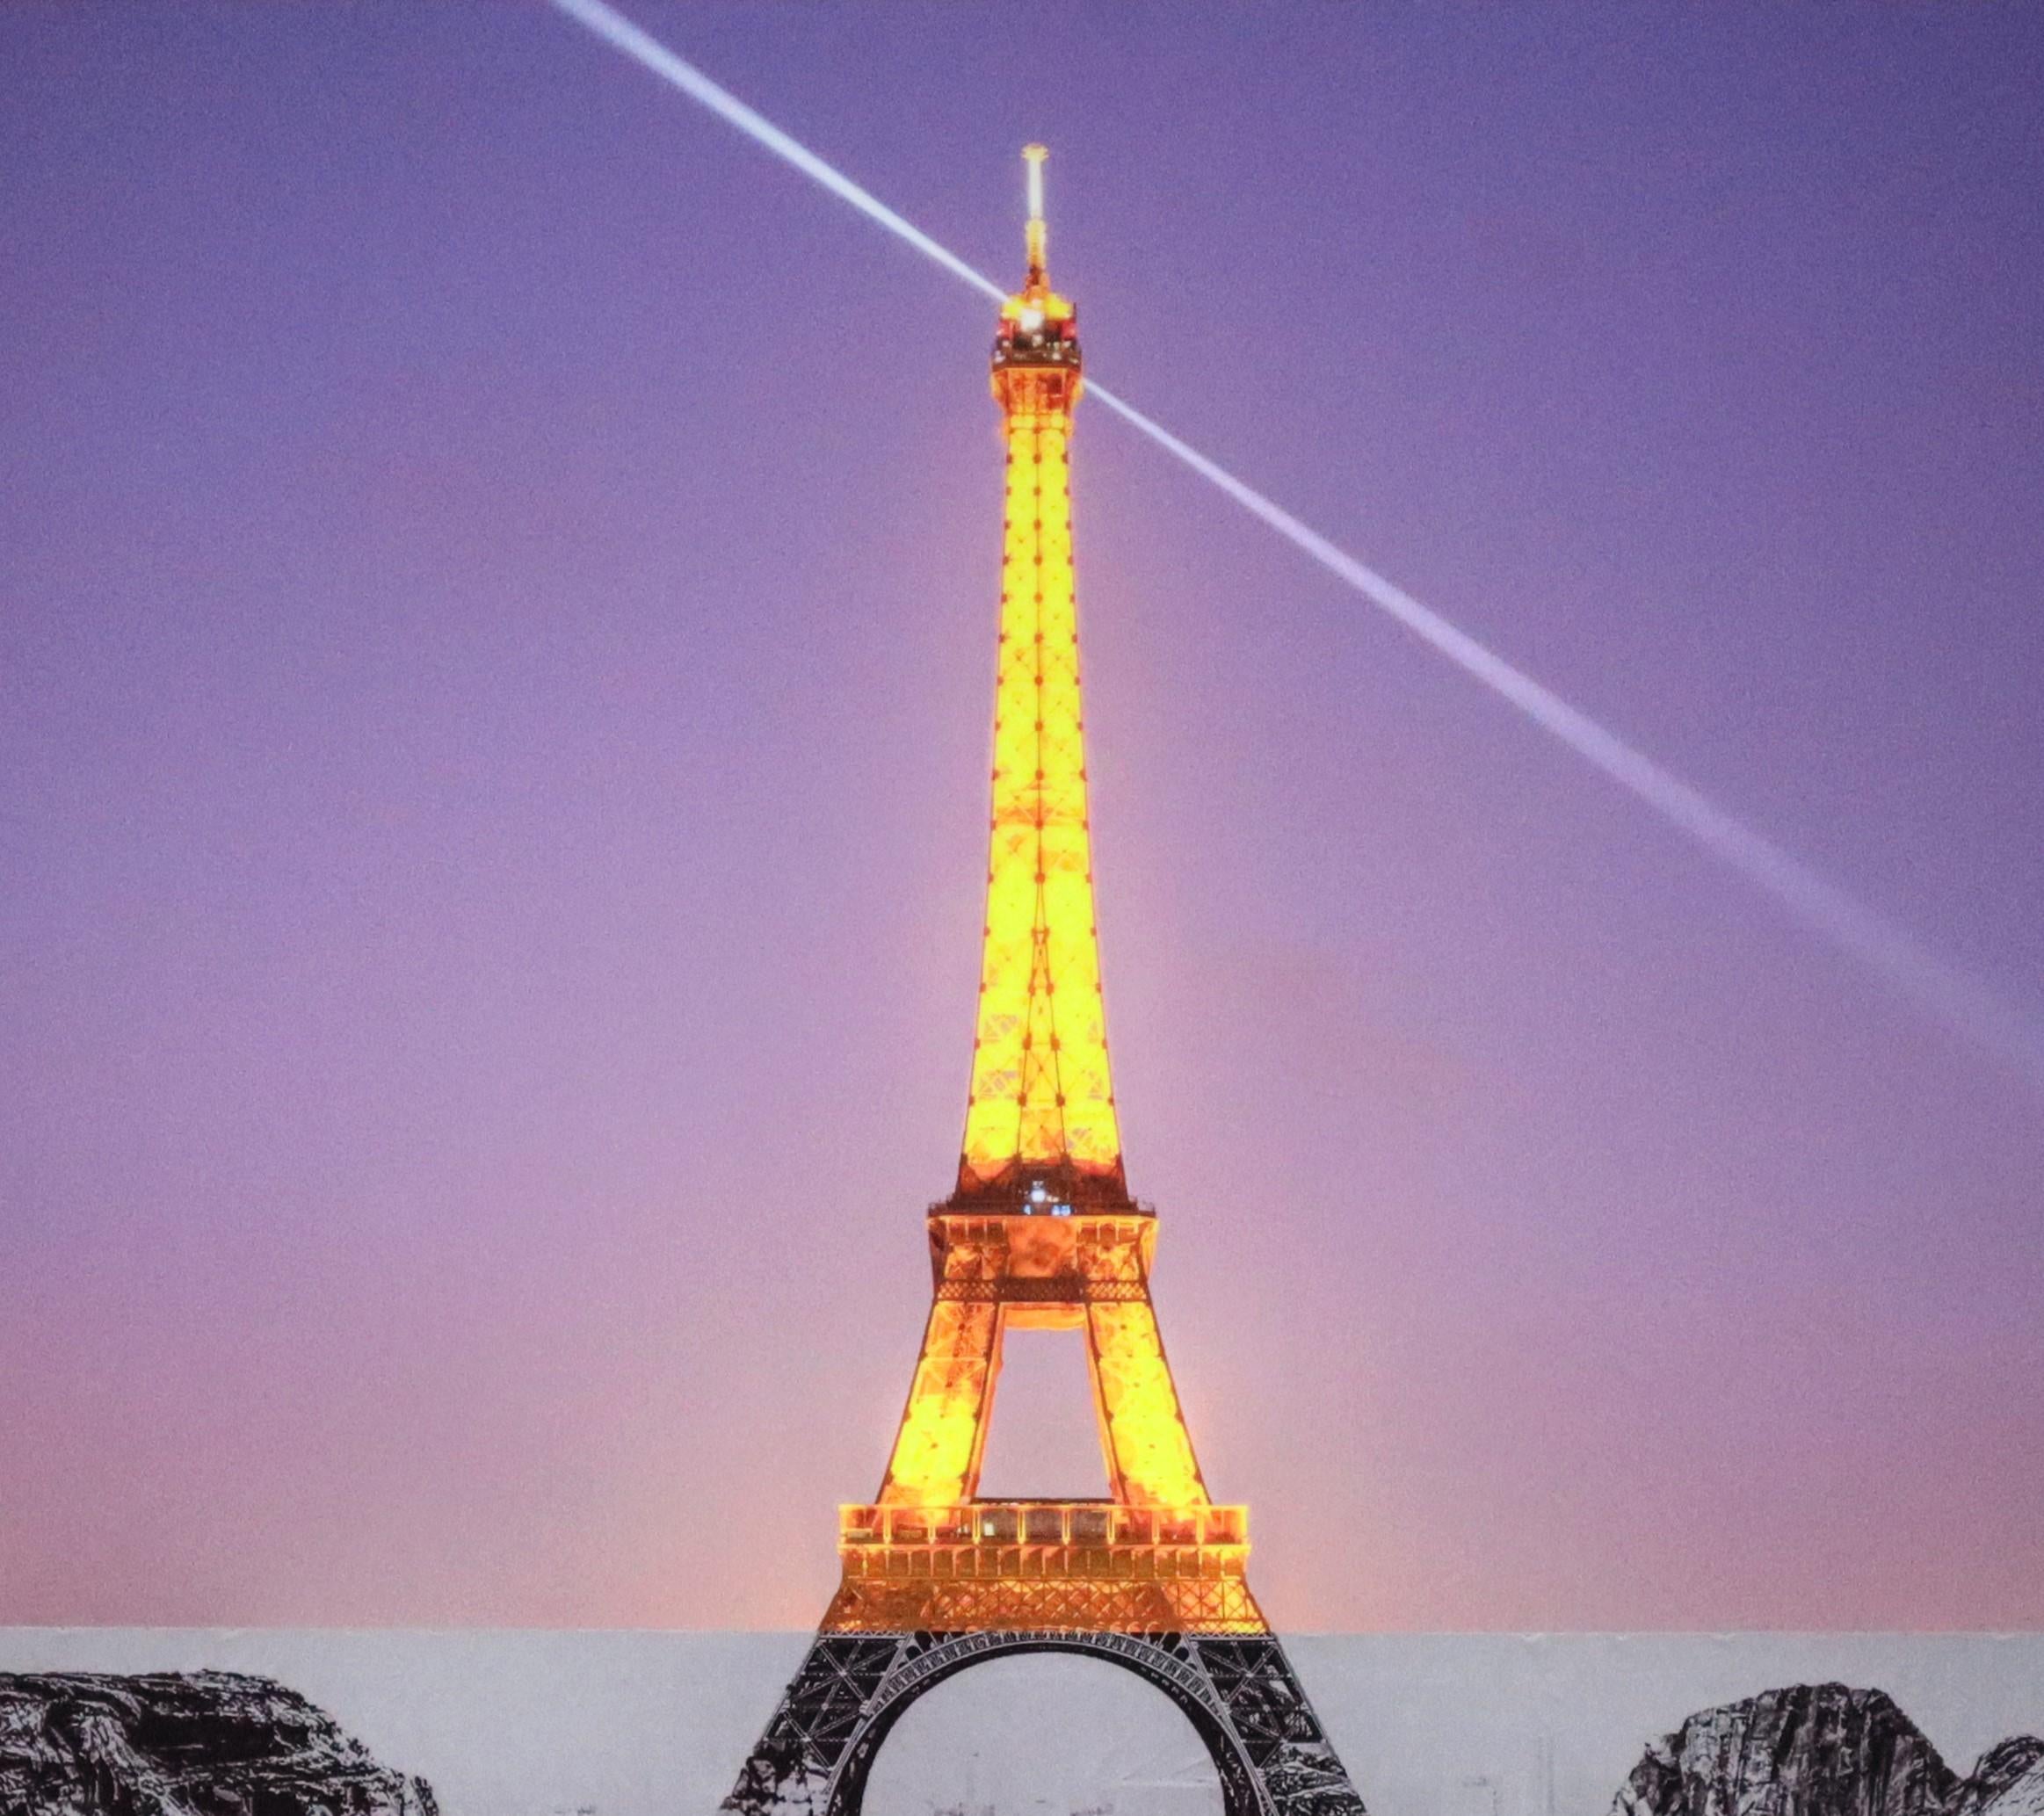 JR
Trompe l'oeil, Les Falaises du Trocadéro, 25 mai 2021, 22h18, Paris, Frankreich, 2021
2021
Giclée-Druck laminiert mit G-Glanz, aufgezogen auf 3mm Dibond
64 × 96 cm
(25,2 × 37,8 Zoll)
In neuwertigem Zustand
Auflage von 472
Signiert von JR in der